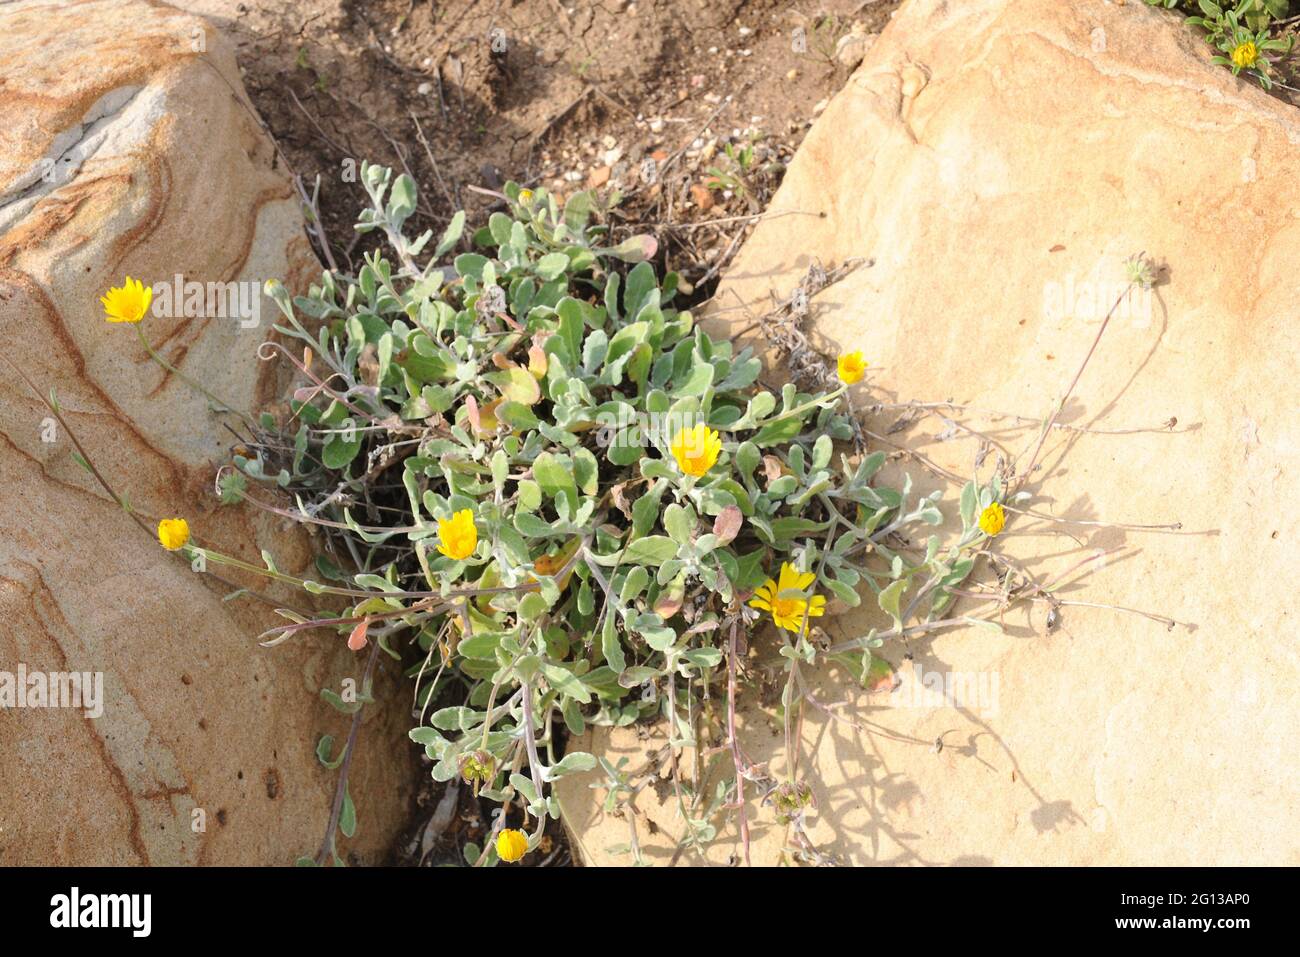 Maravilla de mar (Calendula suffruticosa) ist eine mehrjährige Pflanze, die  auf der südlichen Iberischen Halbinsel beheimatet ist Stockfotografie -  Alamy